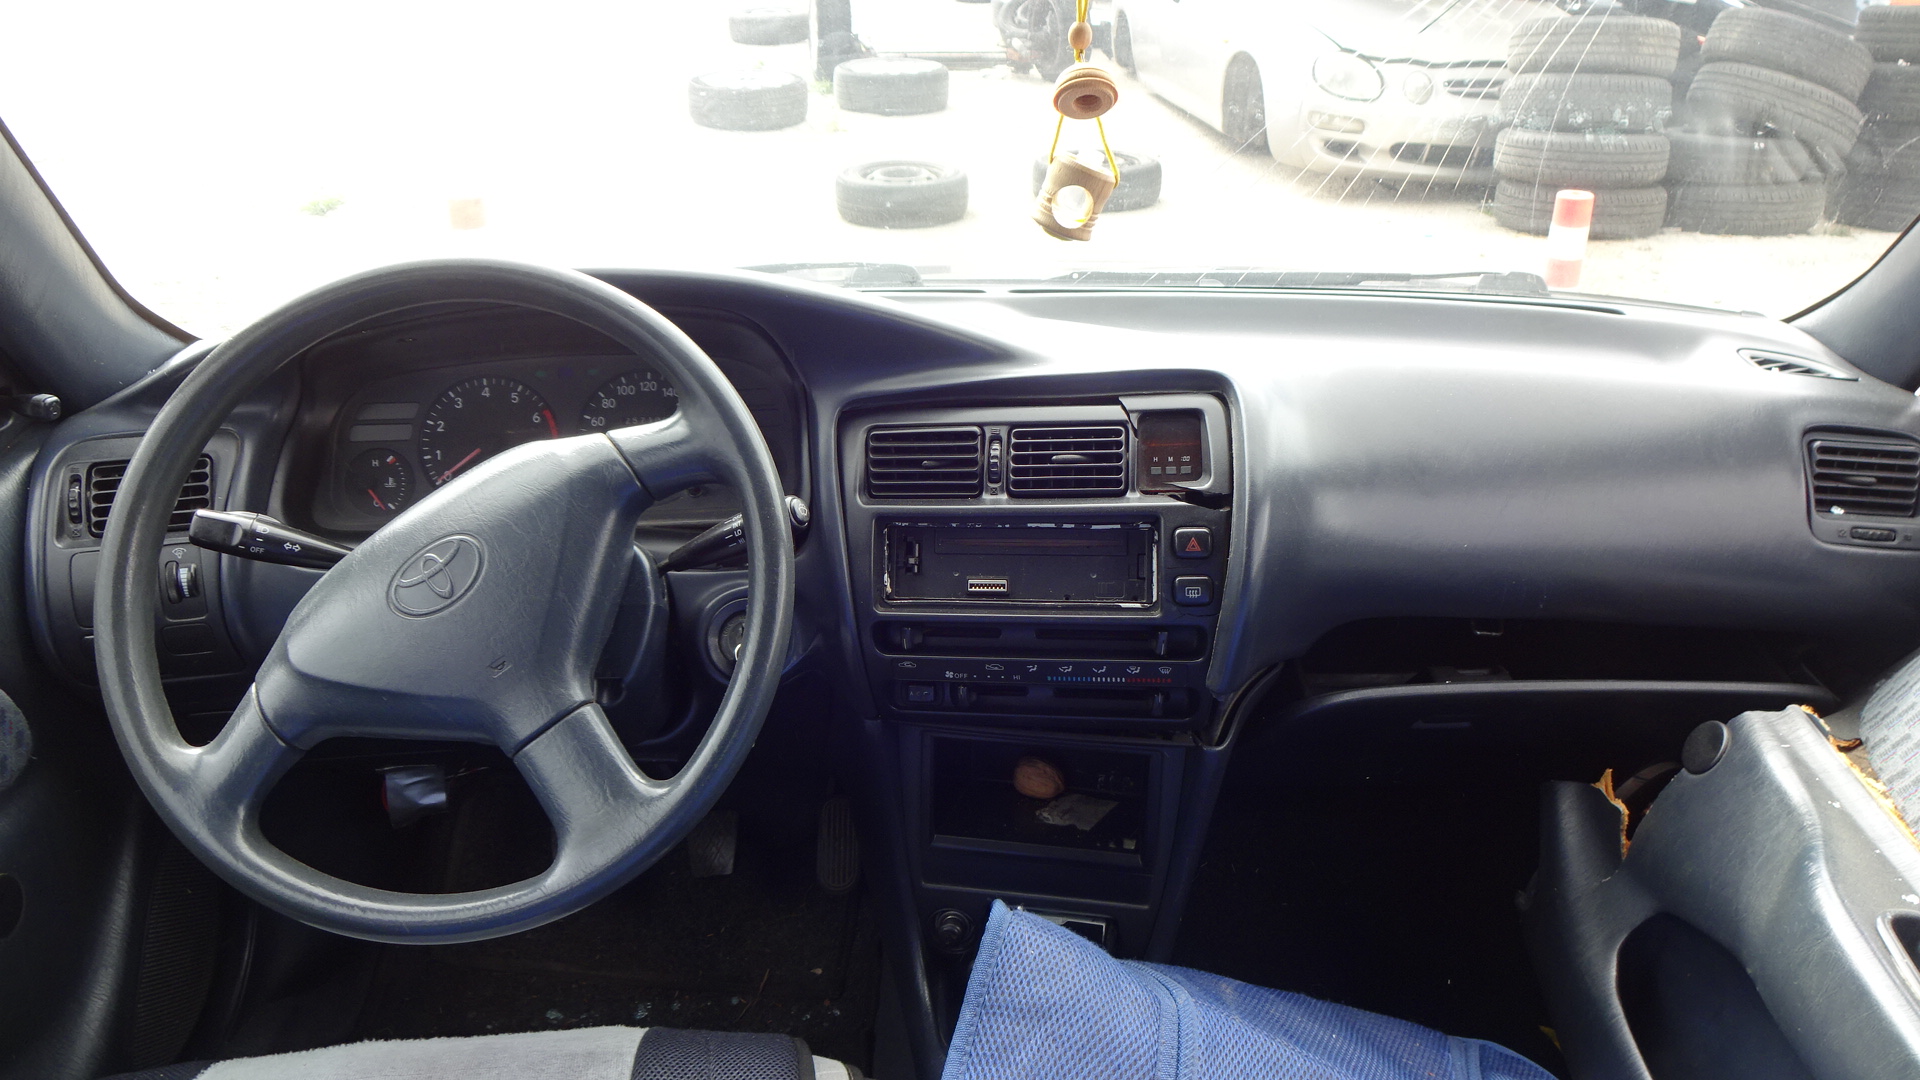 Χερούλια Εξωτερικά Toyota Corolla ’97 Προσφορά.